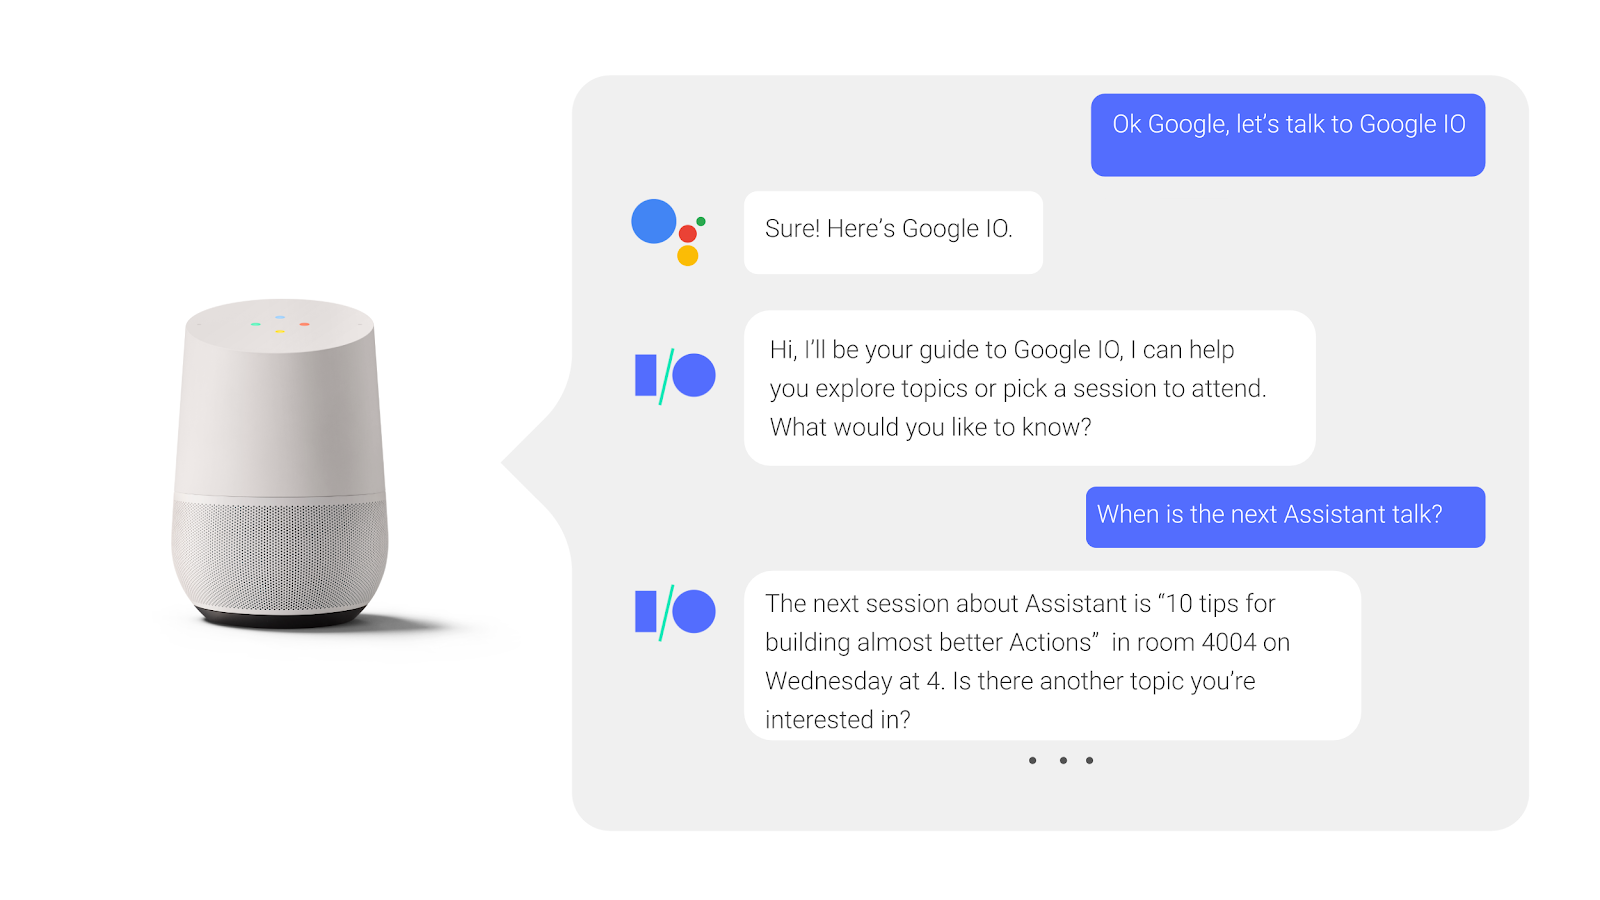 Kullanıcı, Google Asistan ile iki yönlü bir görüşmede konferans oturumu gerçekleştiğinde ilgili soruyu sorar ve yanıt alır.